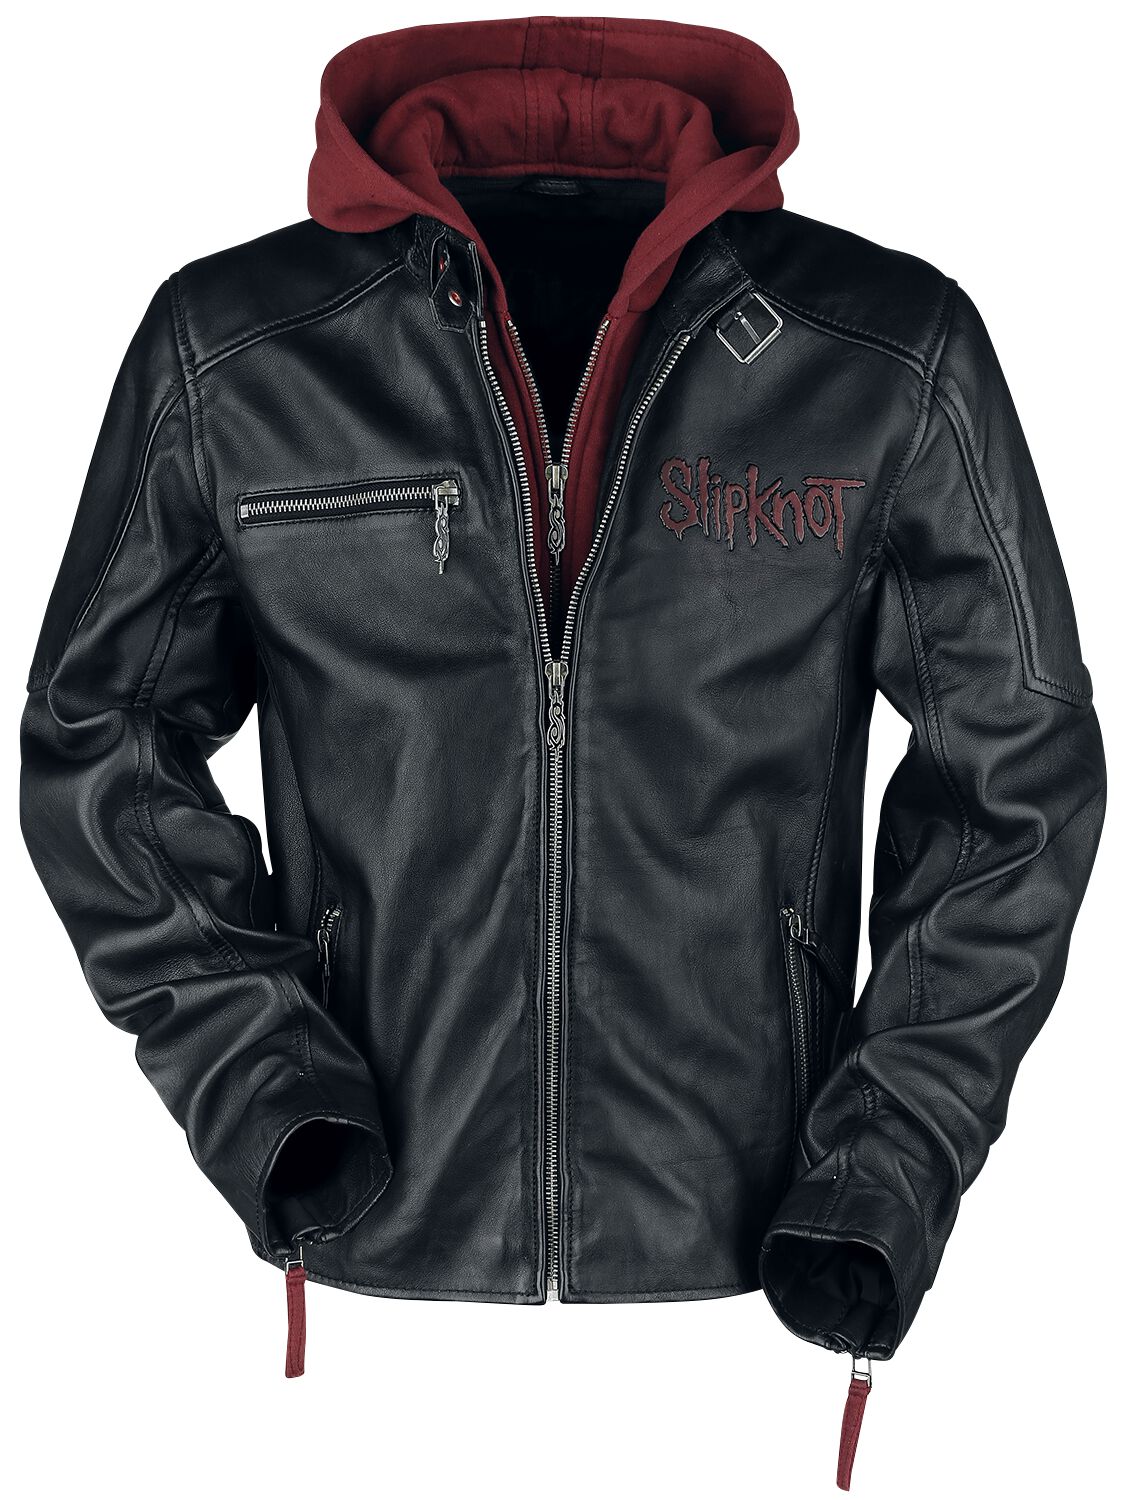 Veste en cuir de Slipknot - EMP Signature Collection - S à 3XL - pour Homme - noir/rouge